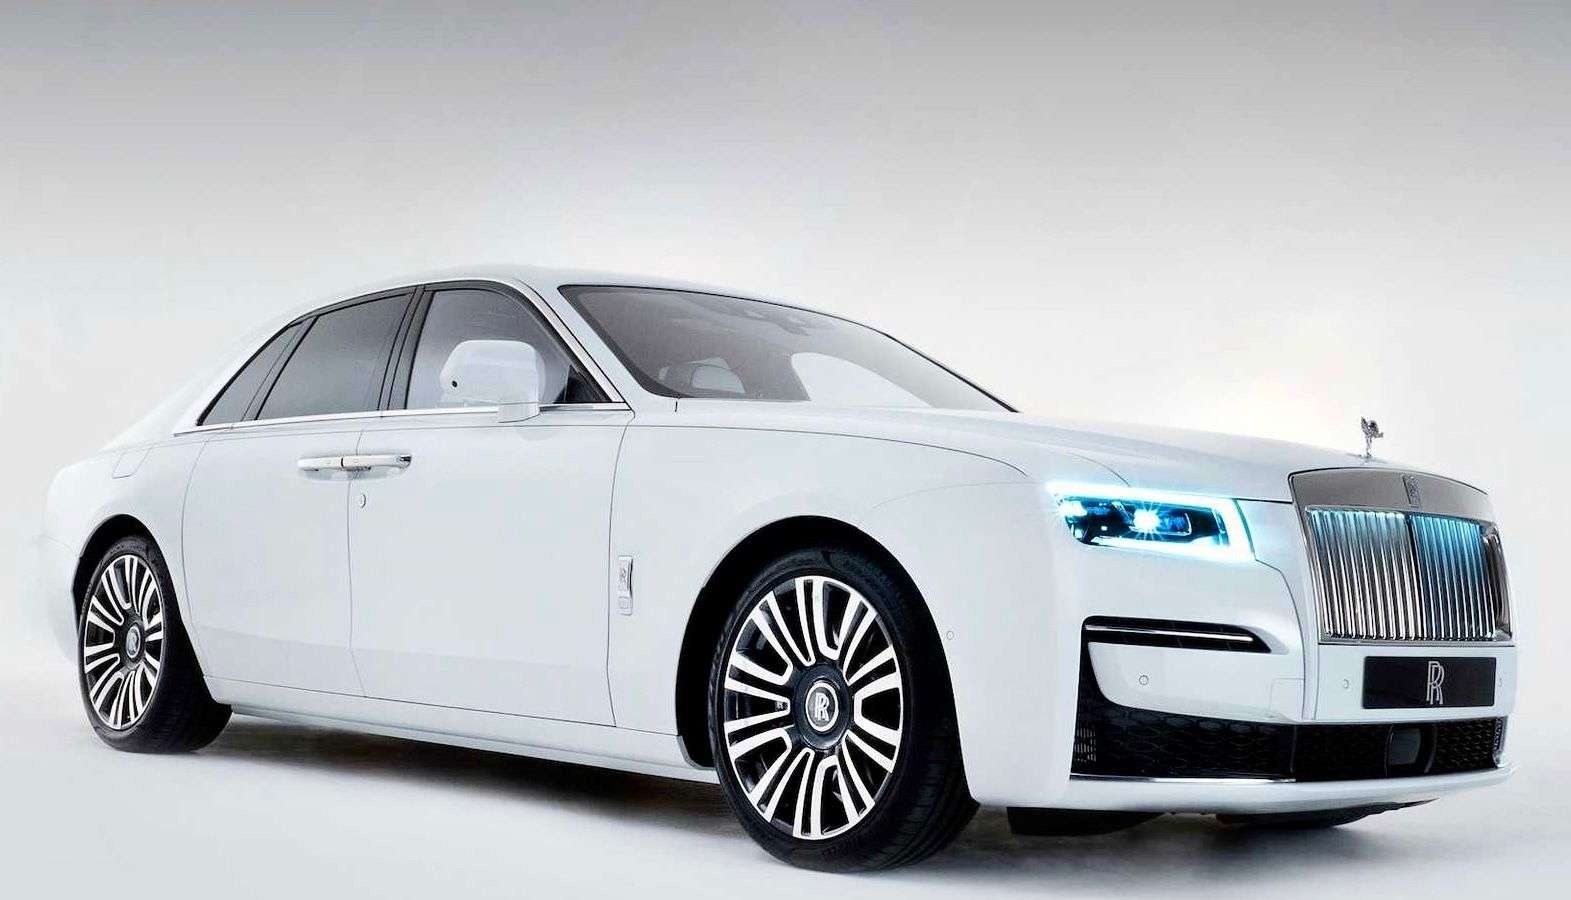 Rolls-Royce Ghost Sedan in White used in München for € 379,800.-